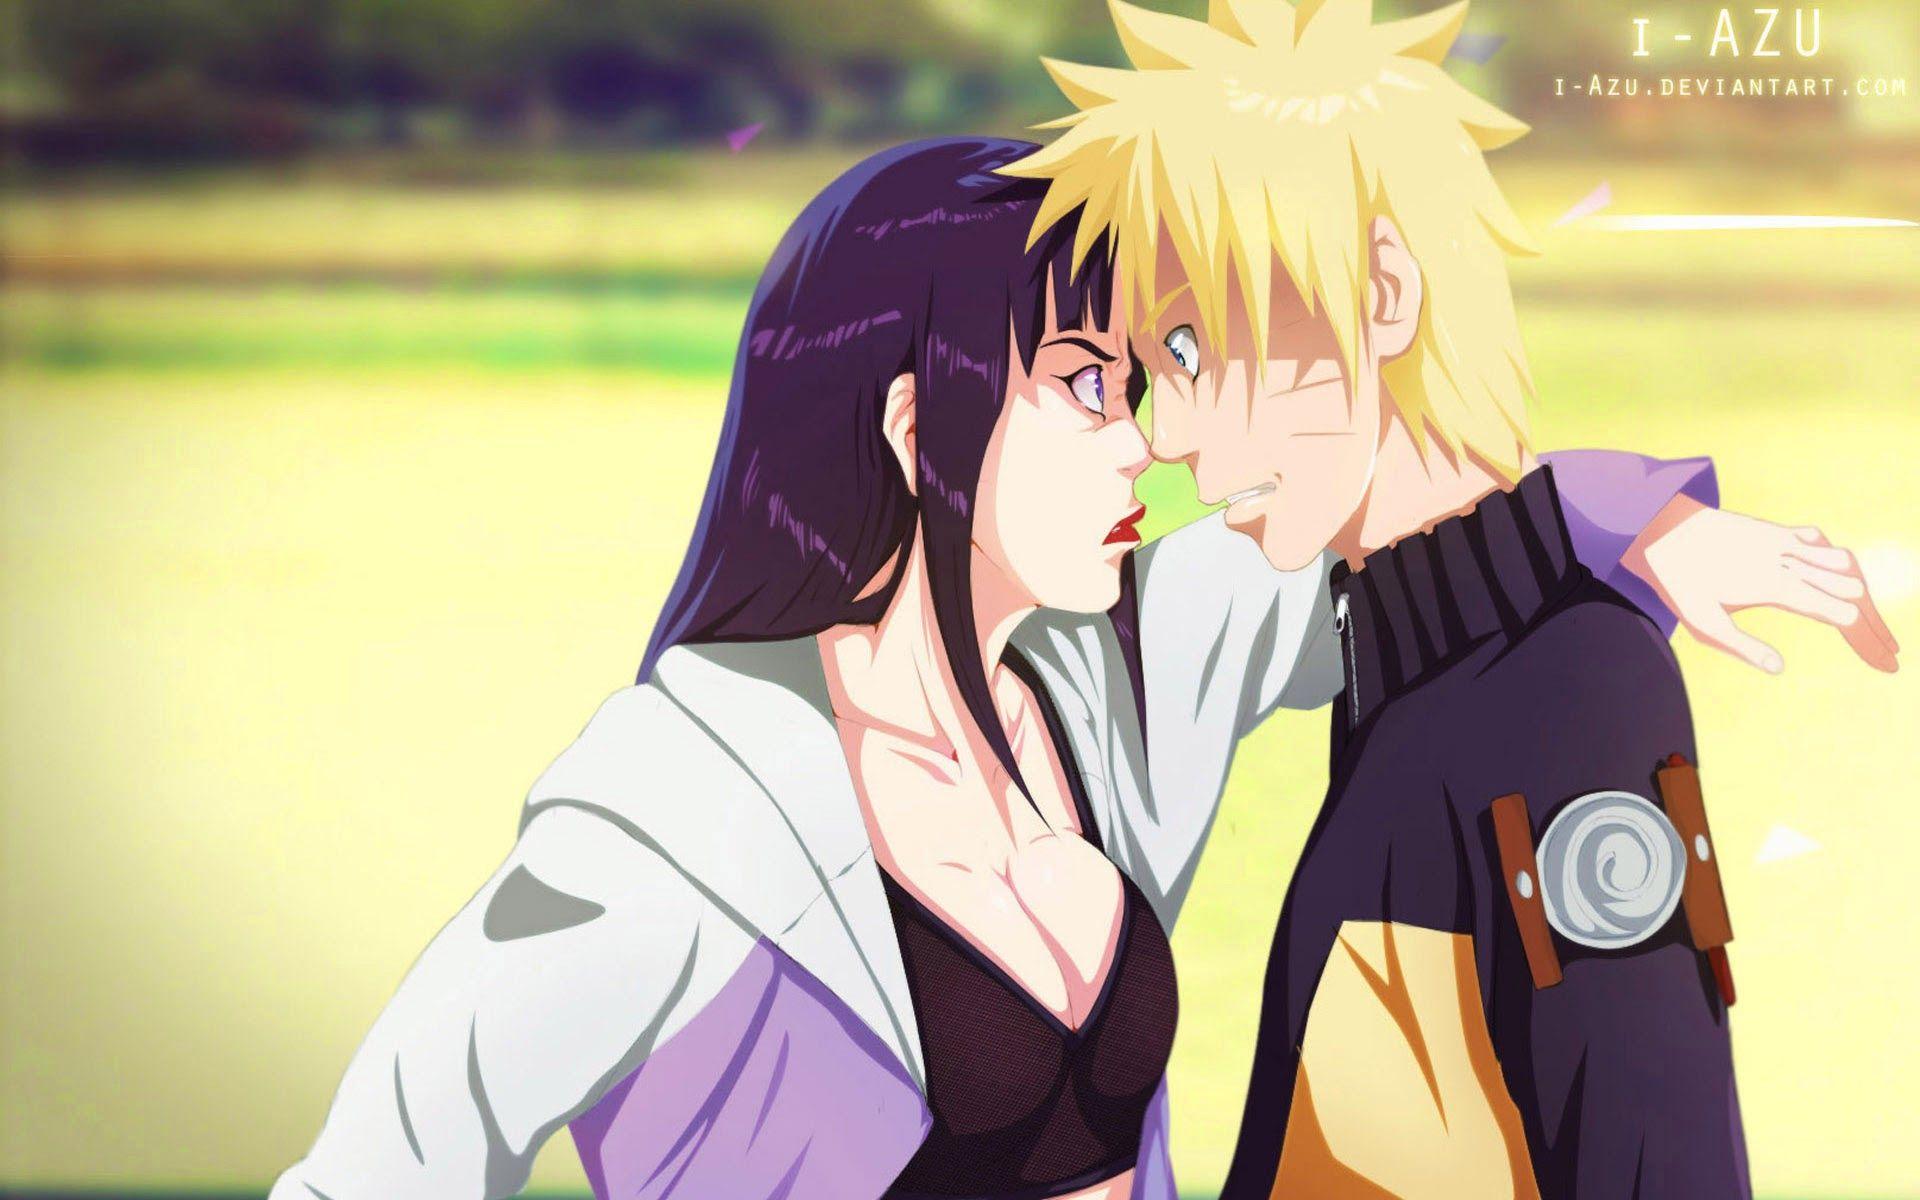 sakura and ino and hinata kiss